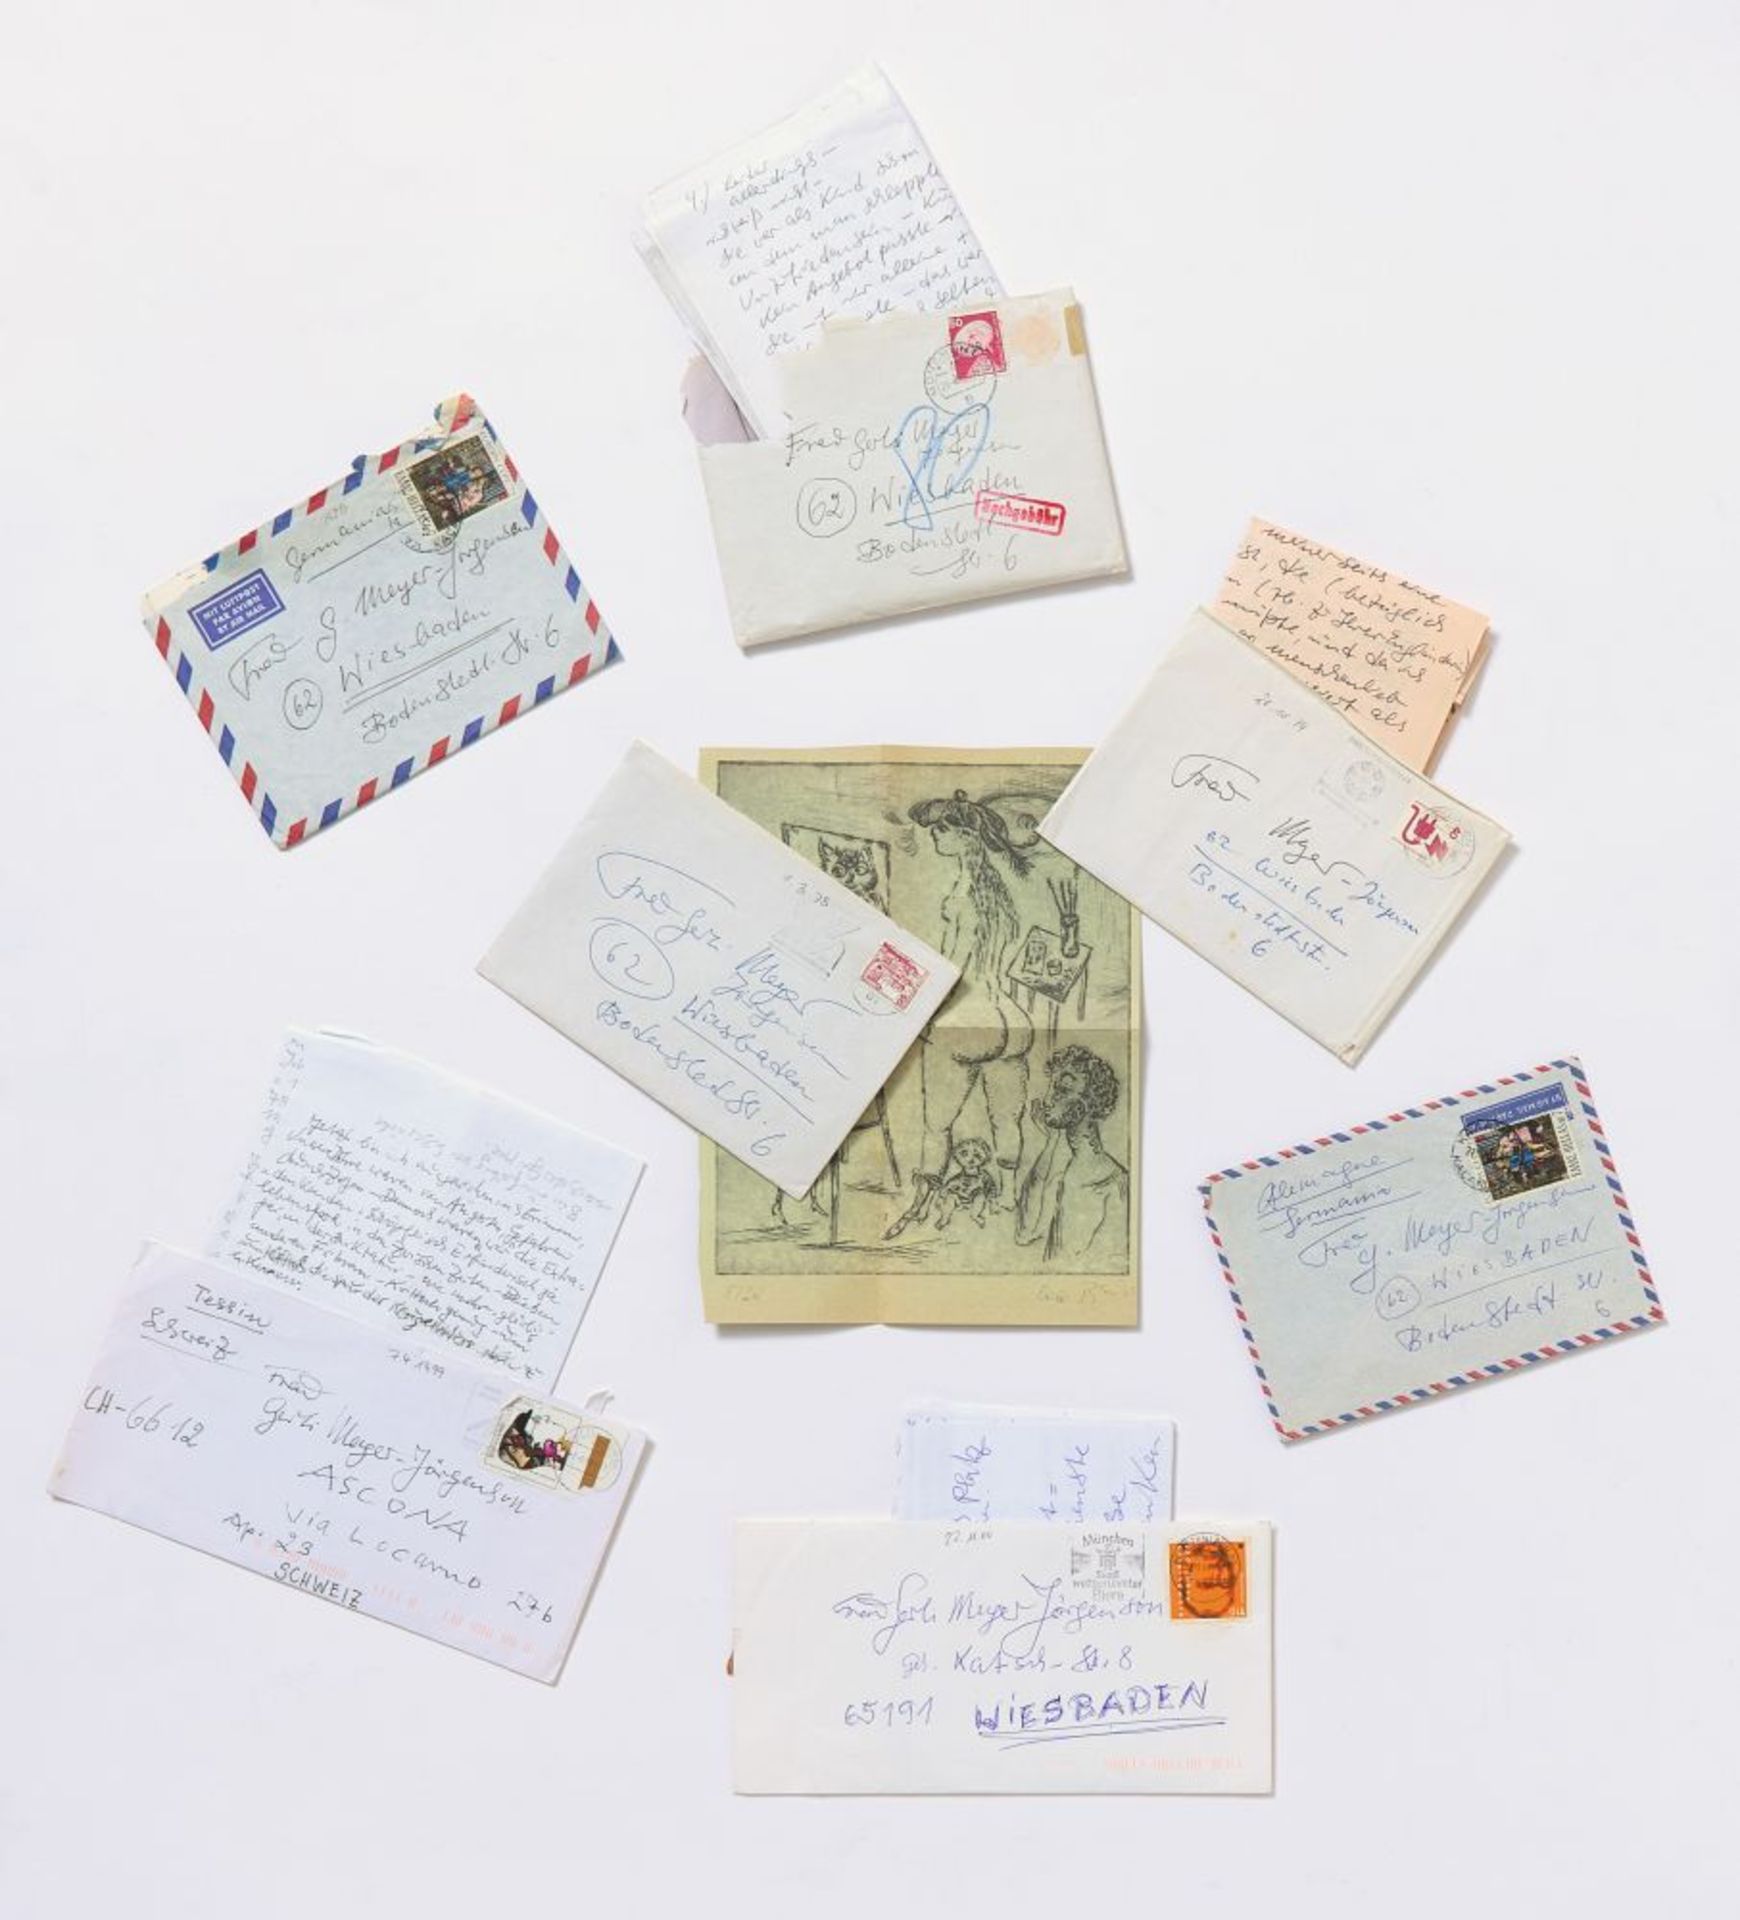 Bele Bachem, 40 eigh. Briefe, Karten, t. mit Zeichnungen. Von ca. 1974 bis um 2003. - An Gertrude Me - Image 6 of 12